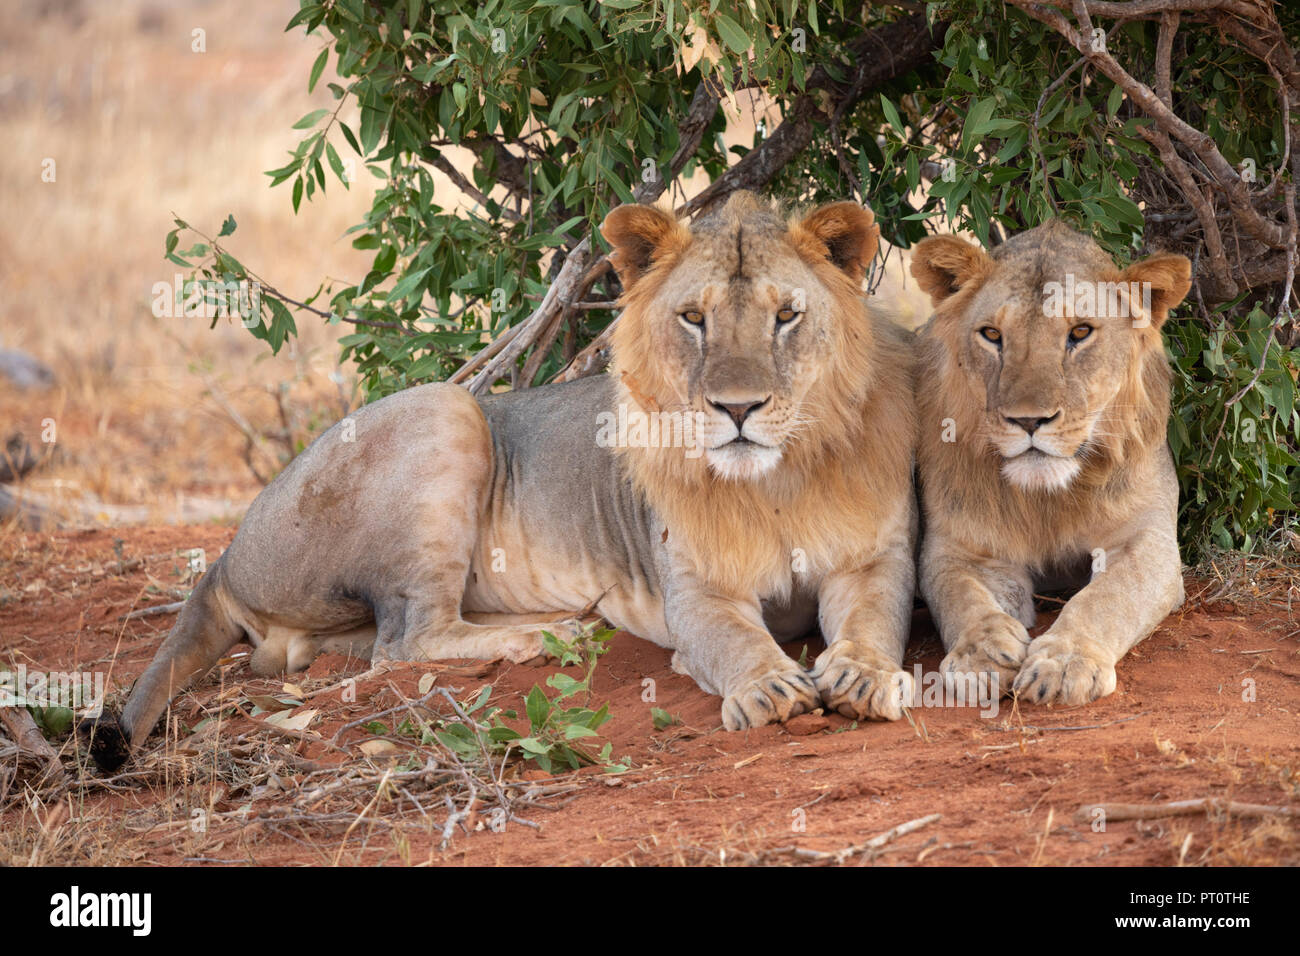 Parco nazionale orientale di tsavo, Kenya, Africa - 25 febbraio 2018: Tsavo Lions in appoggio sotto l'ombra di una bussola di sera Foto Stock